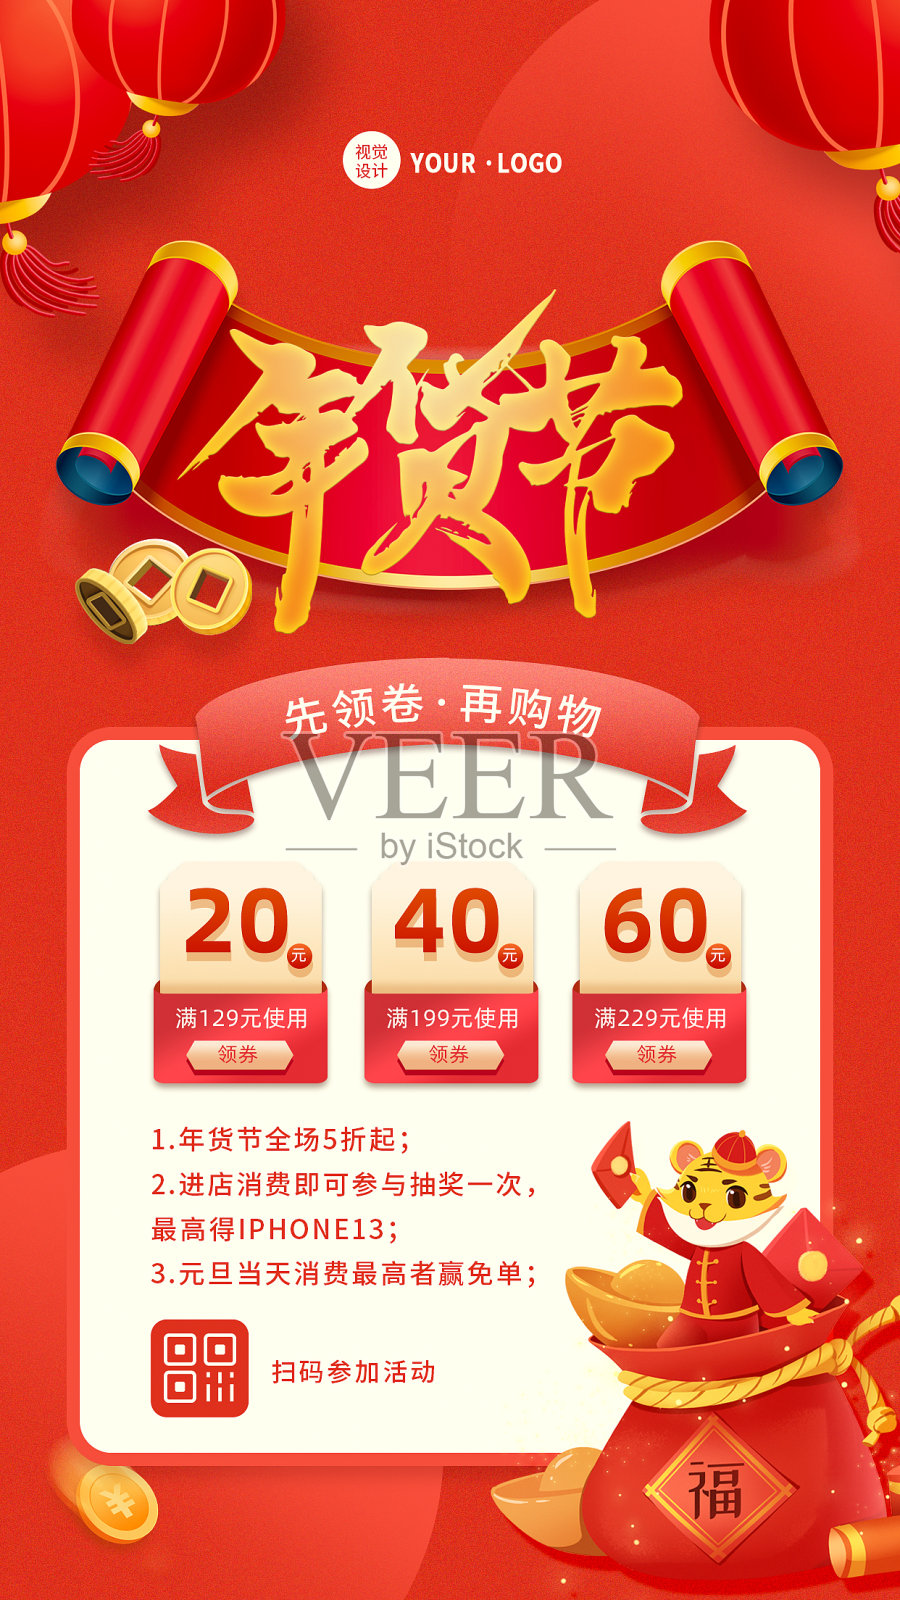 红色创意大气年货节新年春节促销活动宣传手机海报设计模板素材